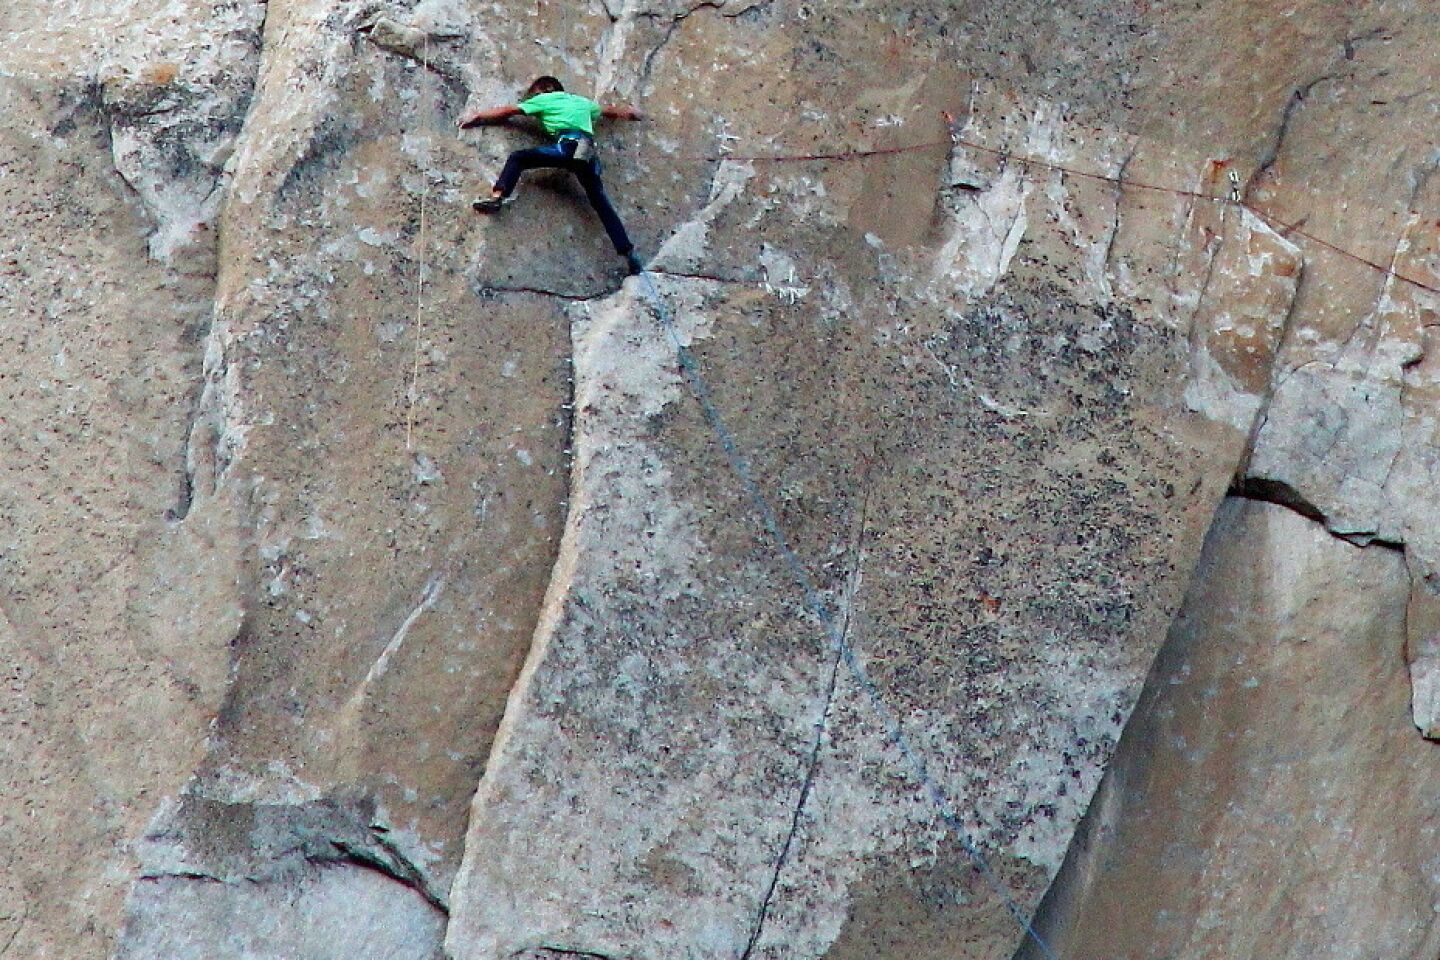 Climbing El Capitan's steep Dawn Wall in Yosemite